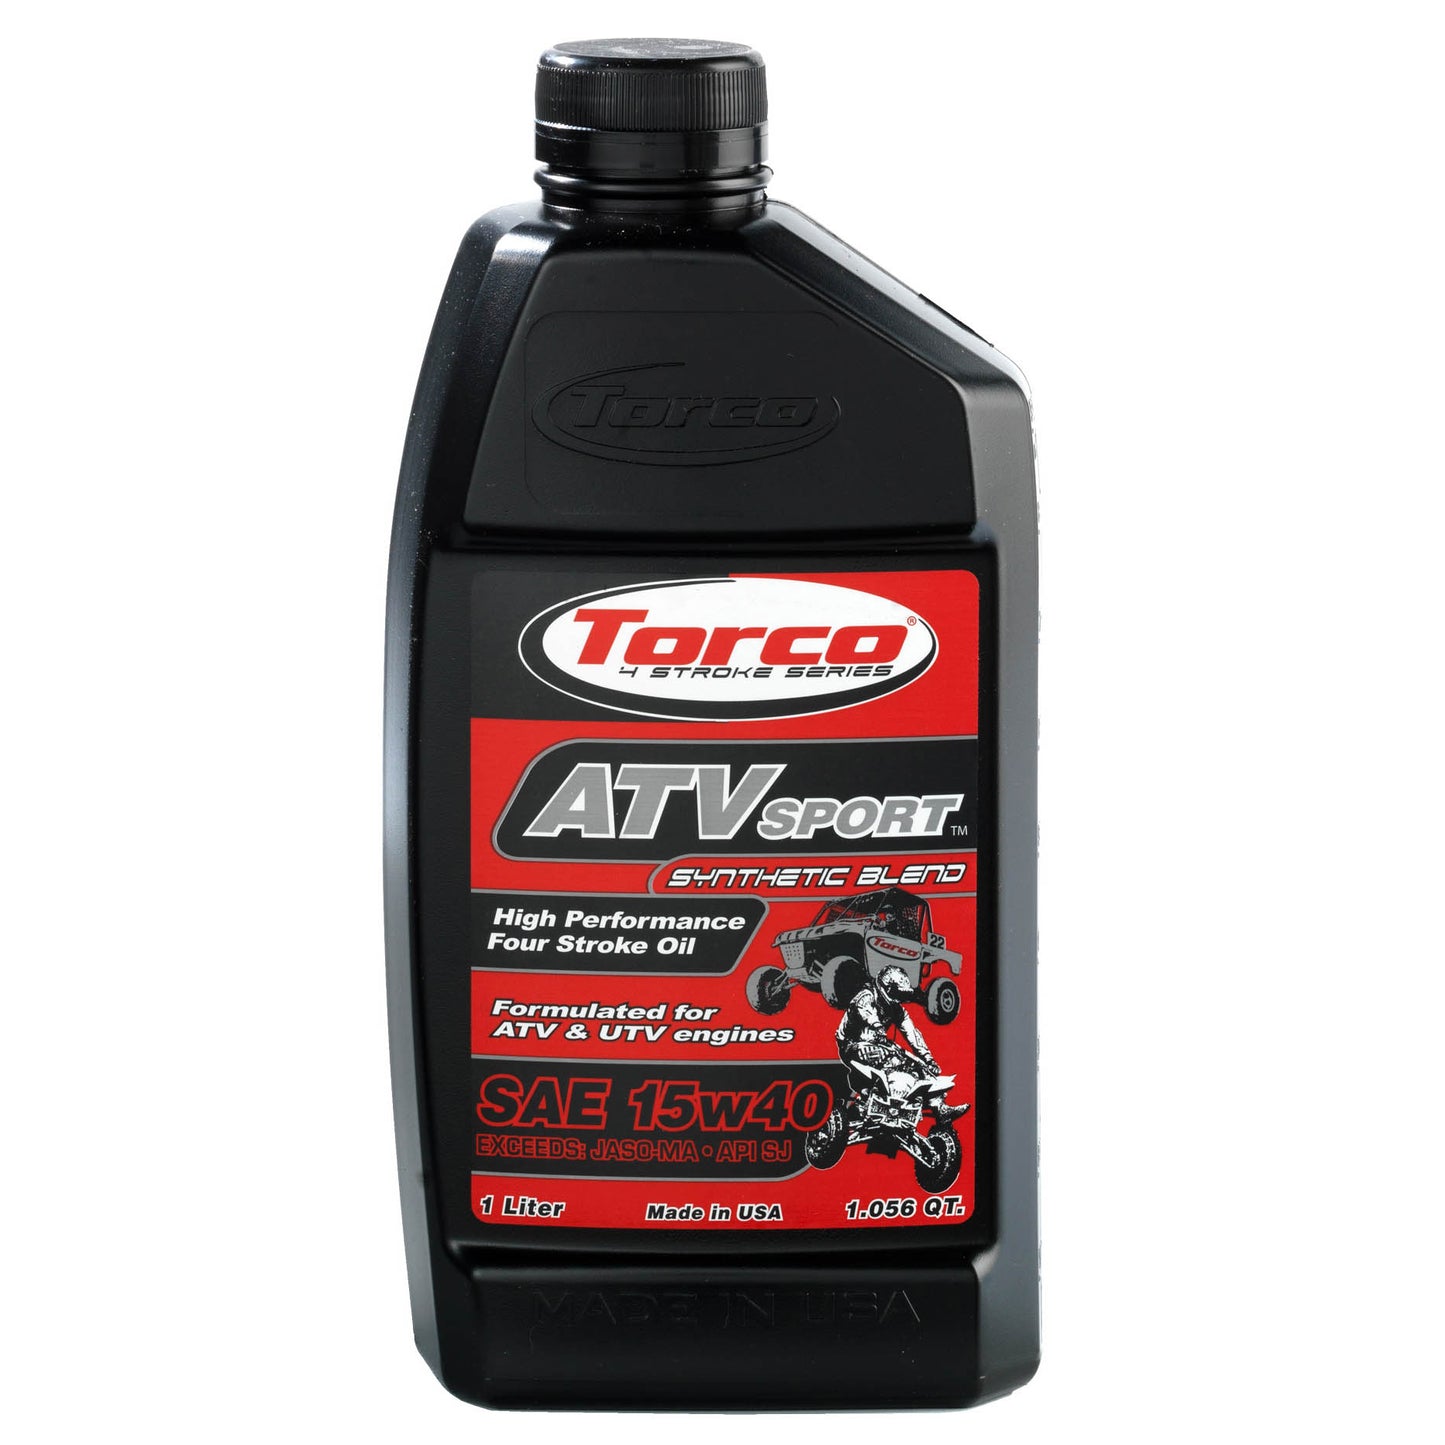 Torco ATV and UTV 4 Stroke Racing oil 15w40